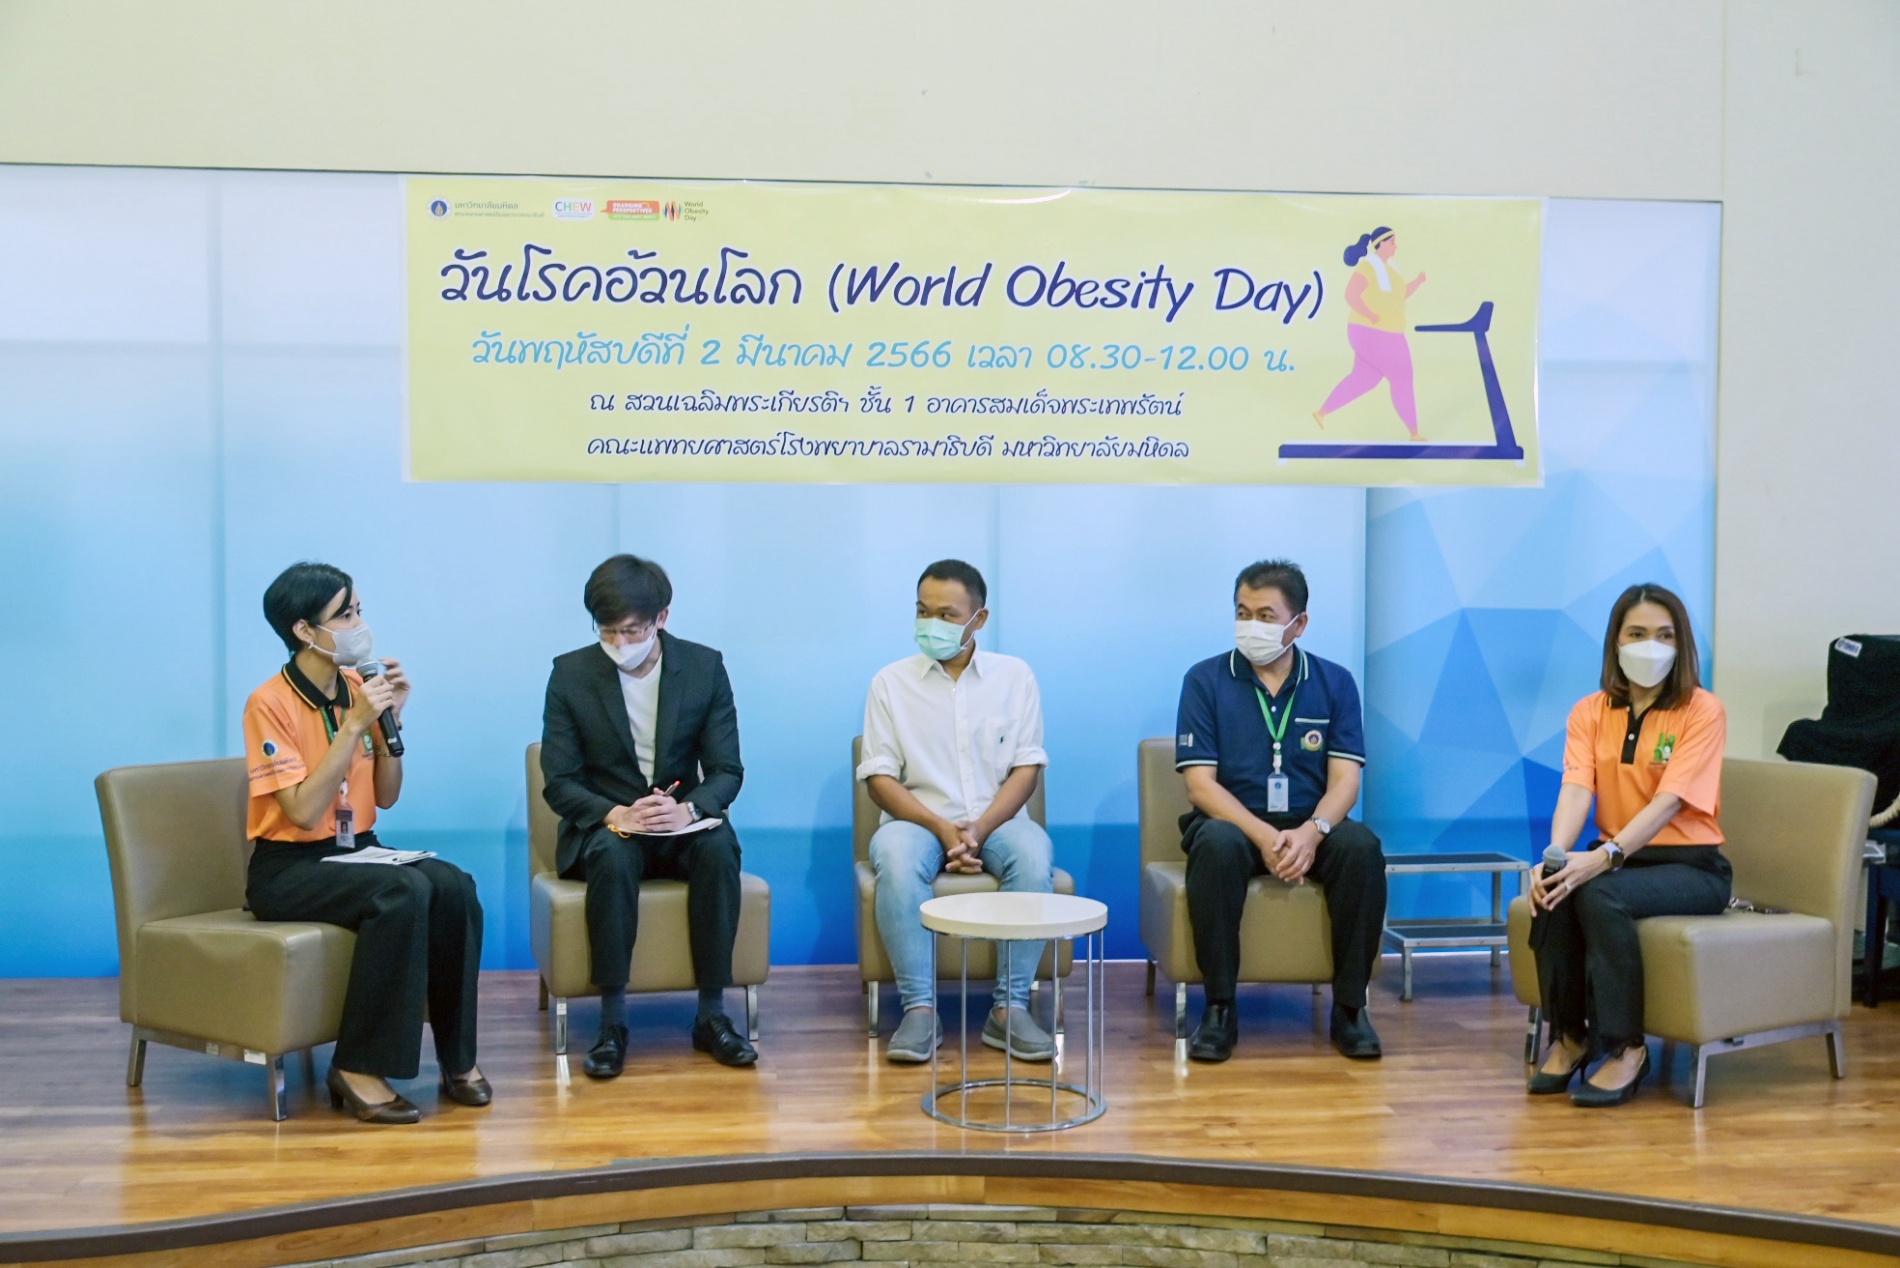 กิจกรรม “วันโรคอ้วนโลก” (World Obesity Day)